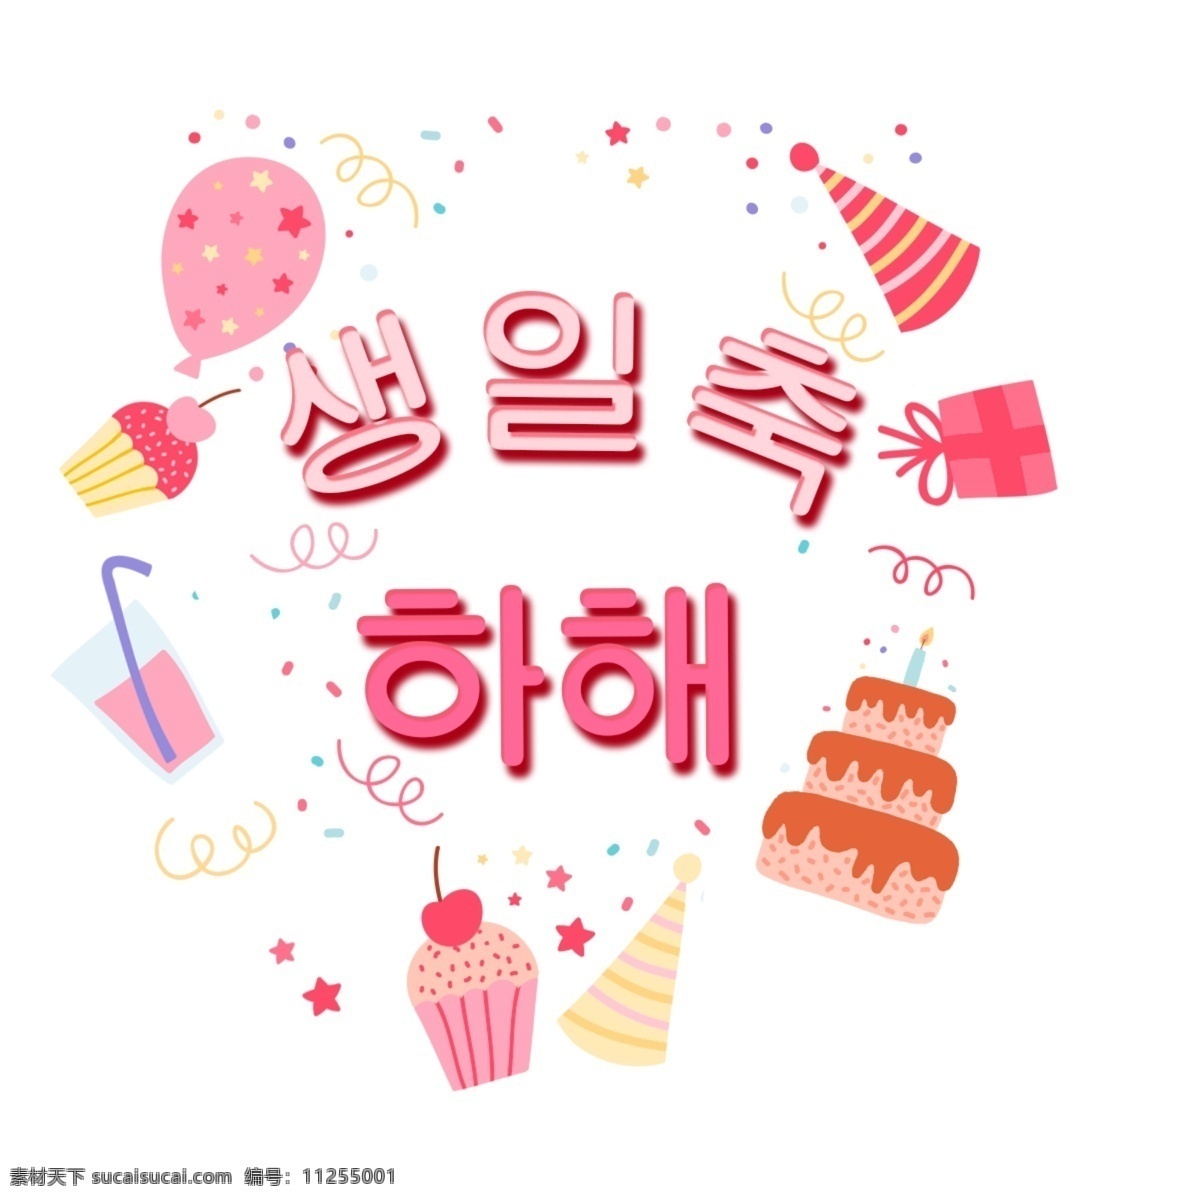 韩国 生日快乐 生日 祝你生日快乐 北京吉 礼品 粉 韩国人 字符 字形 韩国字体